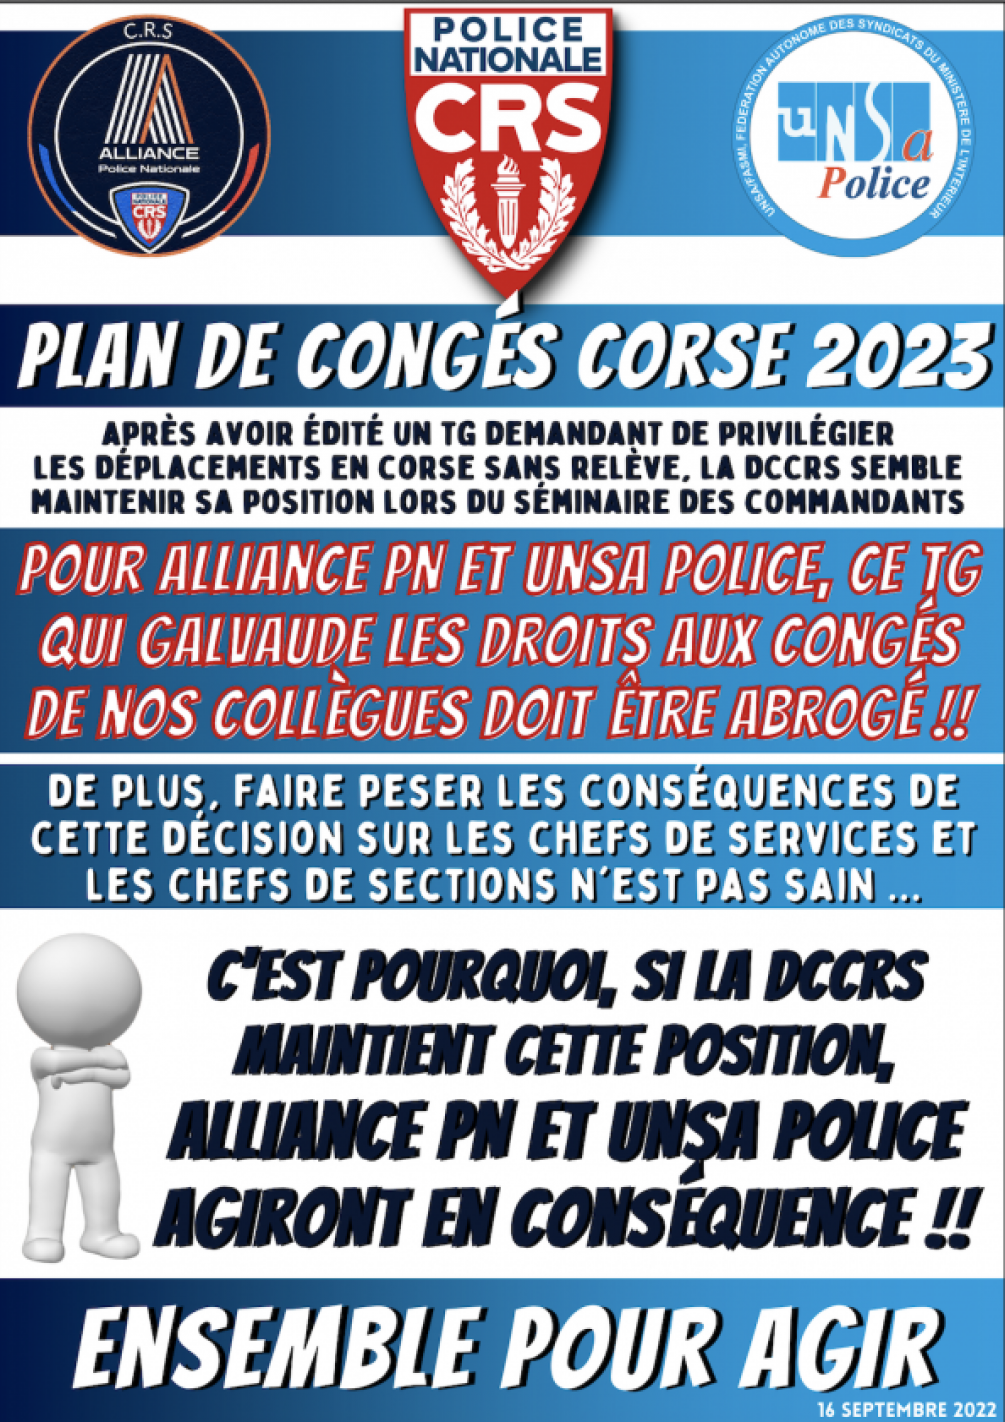 PLAN DE CONGES CORSE 2023